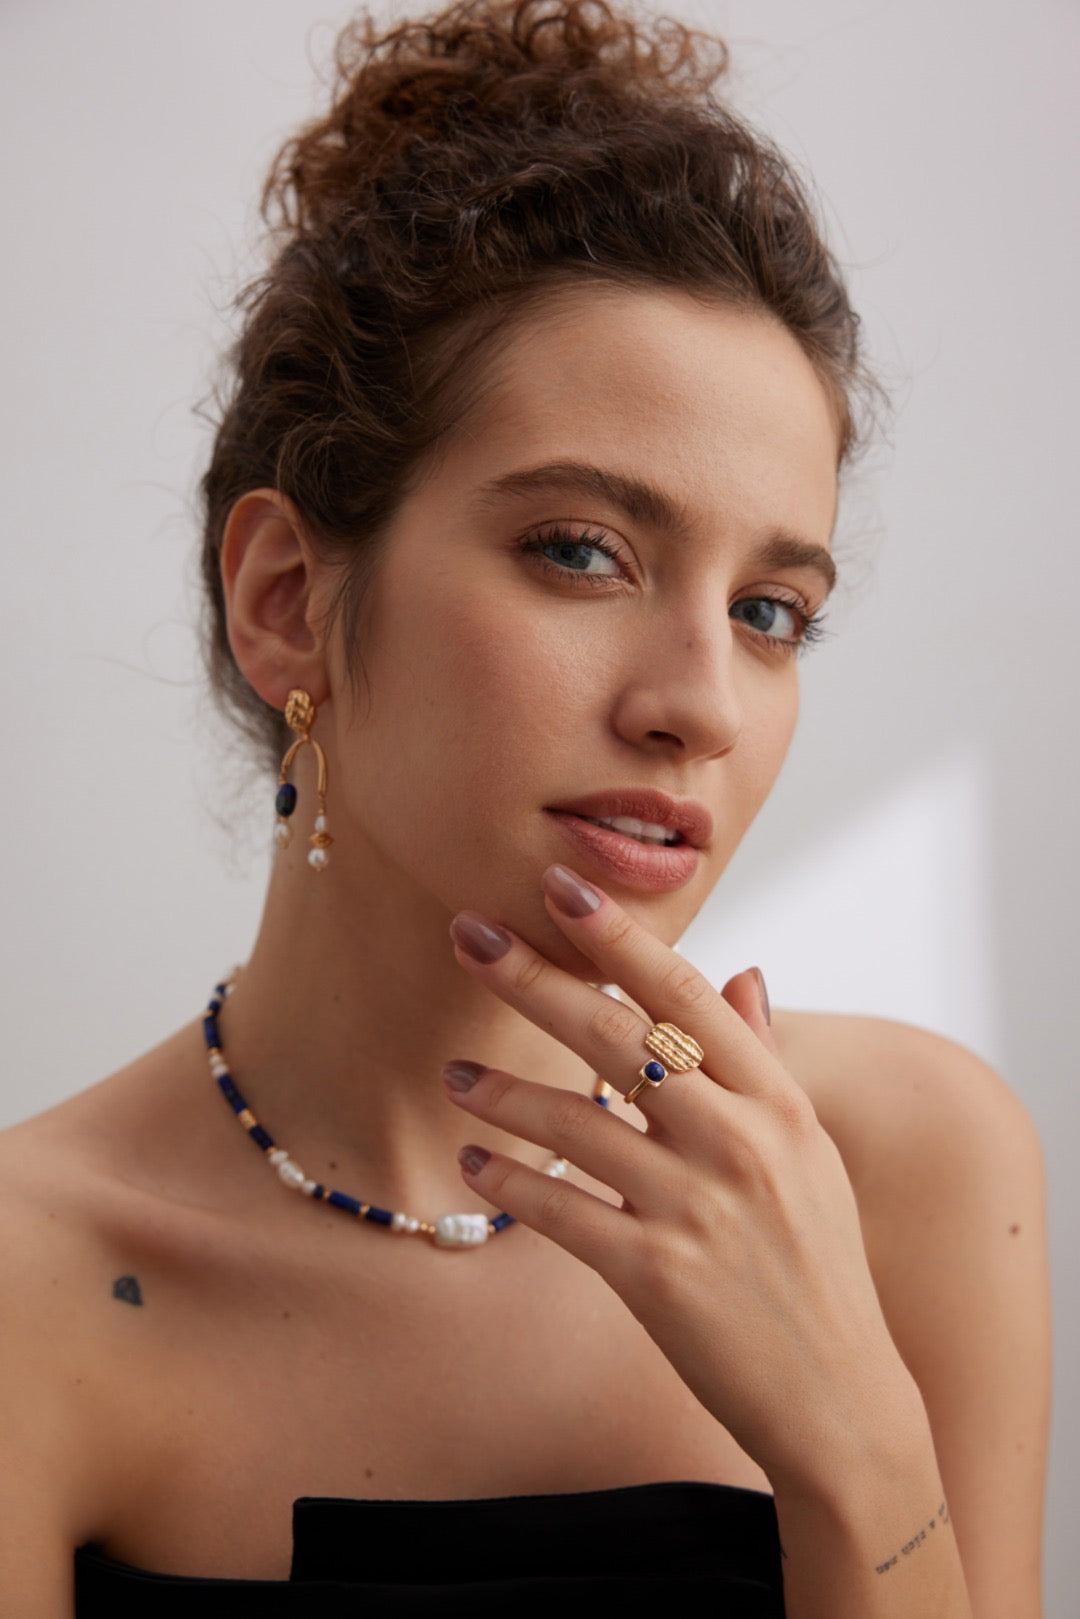 Lapis Lazuli Jewelry | Lapis Lazuli Necklace | Gold Jewelry | Women's jewelry